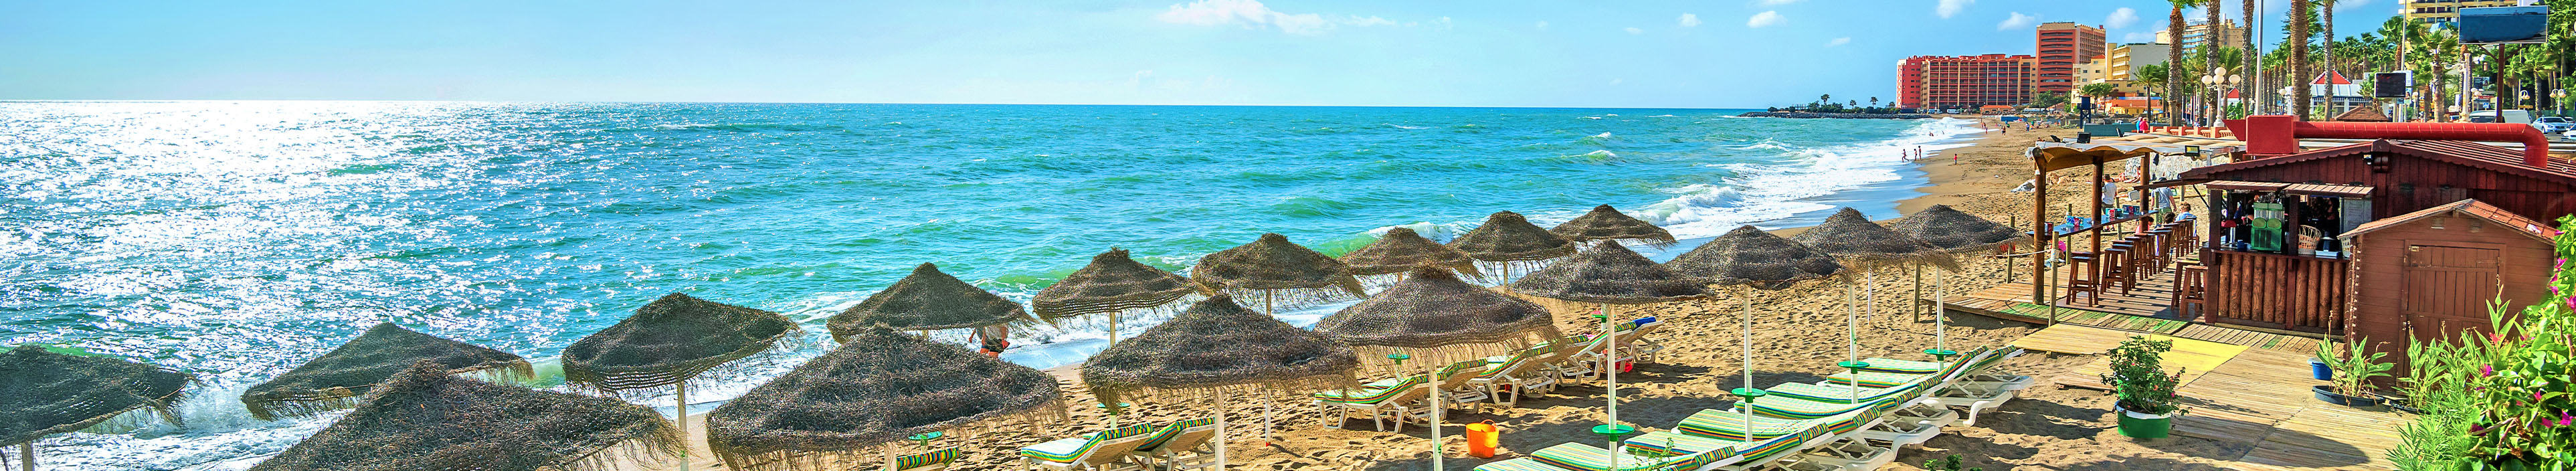 Strand in Spanien mit Sonnenschirmen und Liegen, Palmen und Hotels im Hintergrund. 